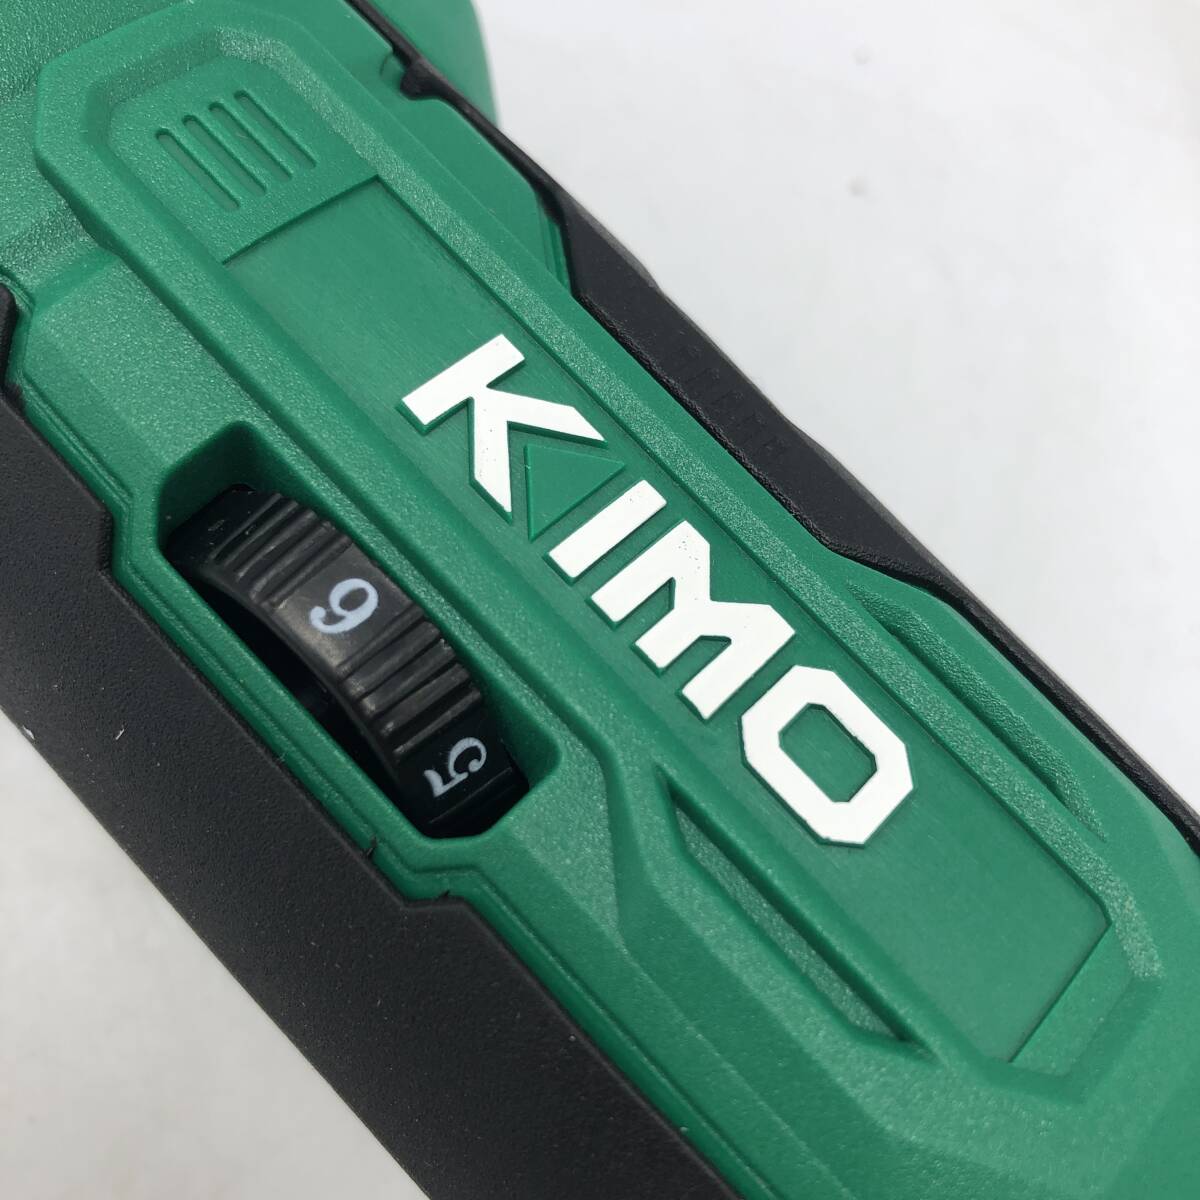 【付属品不足】KIMO ポリッシャー 電動ポリッシャー 充電式ポリッシャー コードレス 2.0Aバッテリー2個 収納バック付き QM-5005 /Y16601-C1_画像5